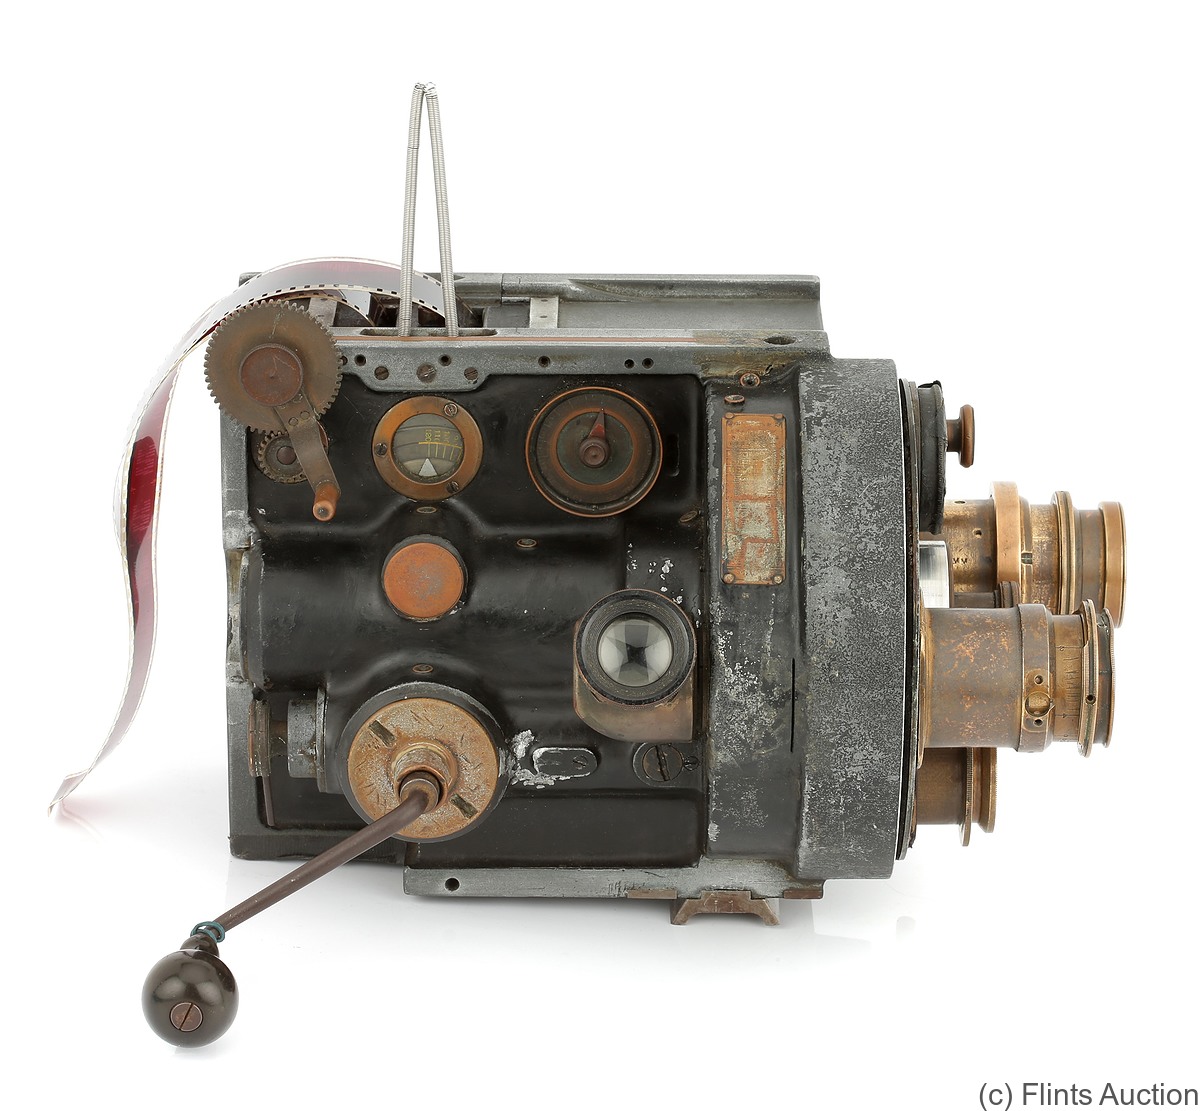 Bell & Howell: 2709 (1912) camera